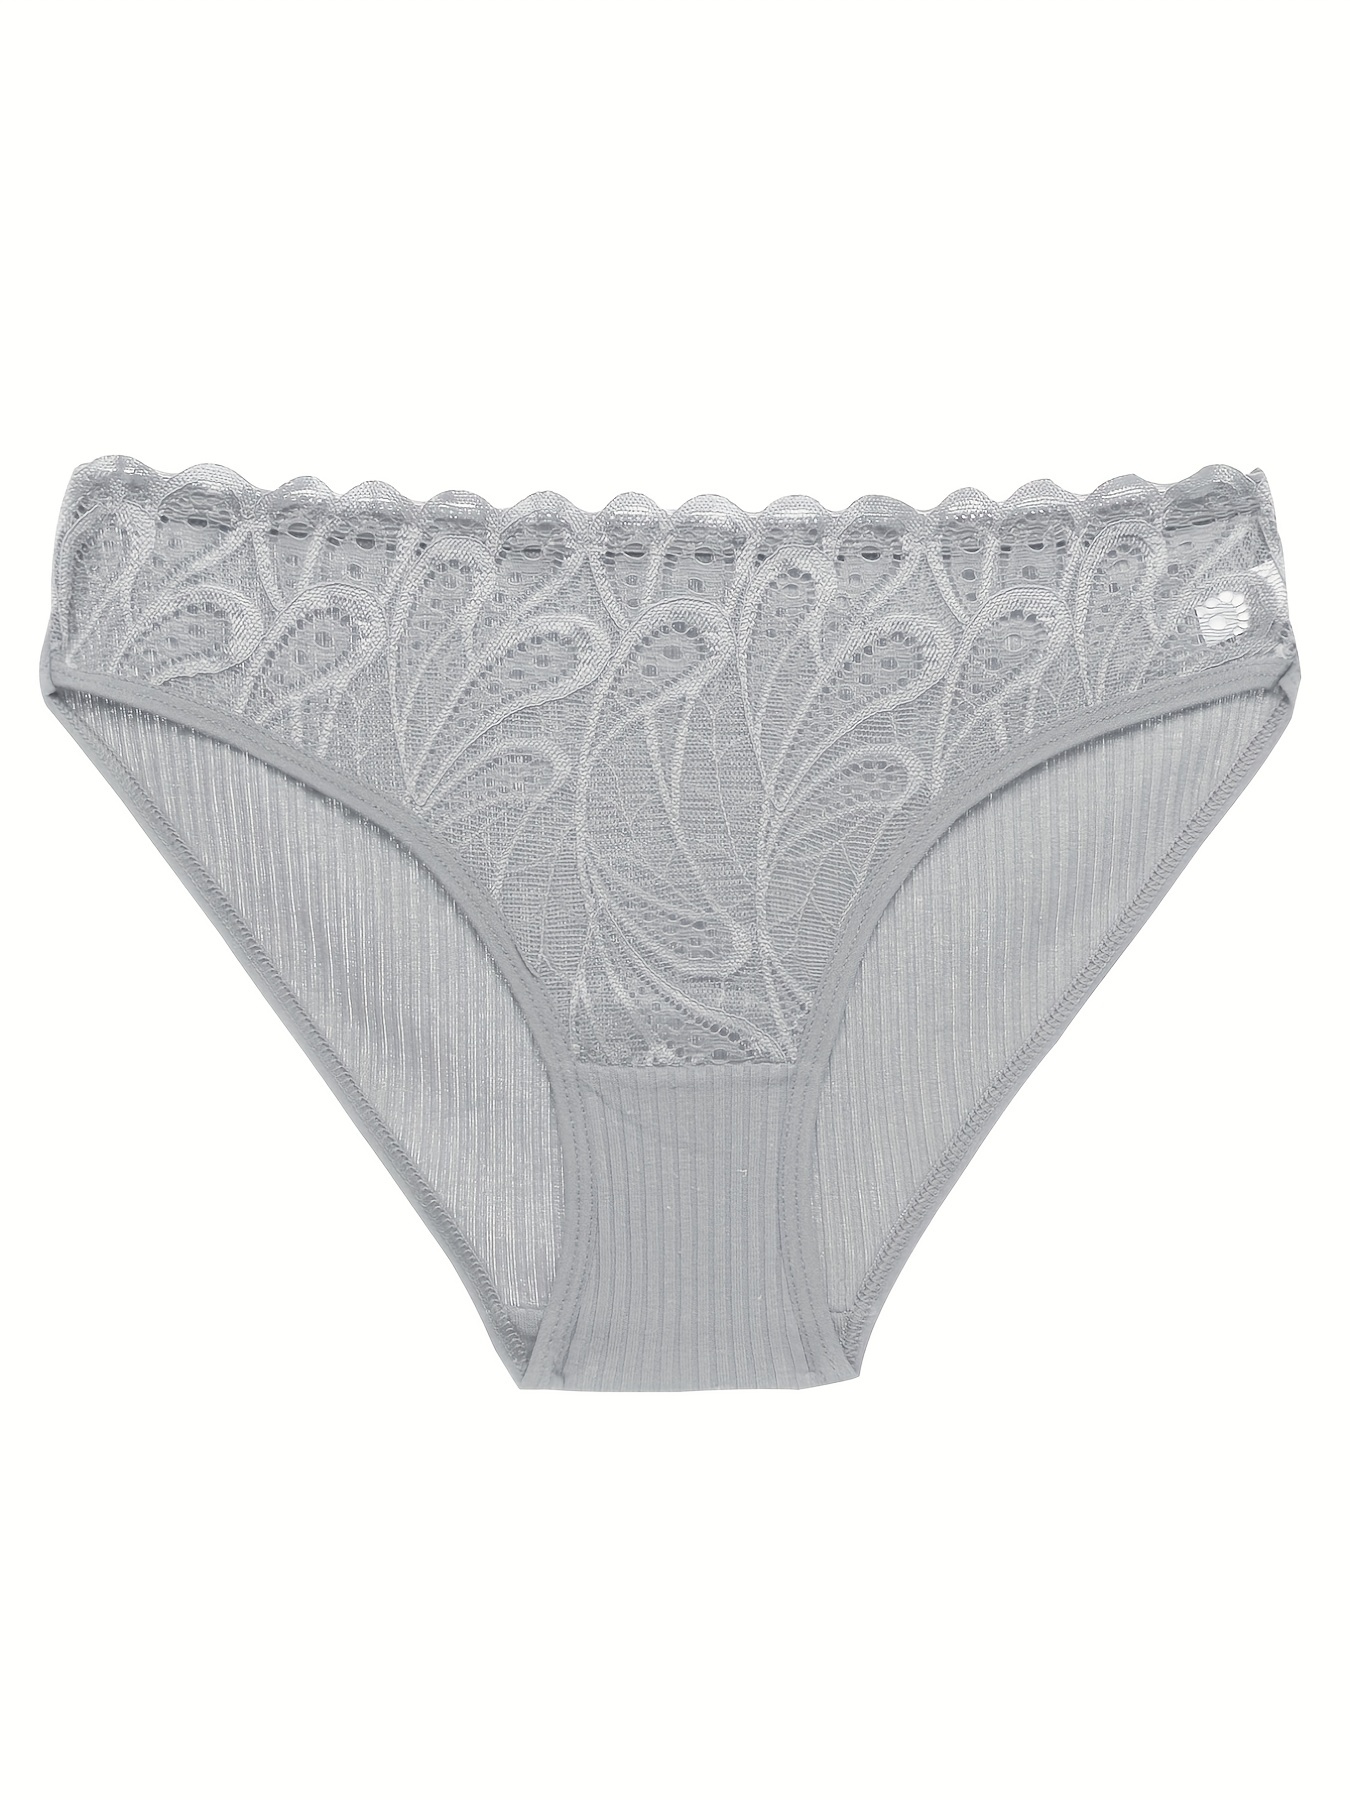 Generic 3pcs/lot Cozy Lingerie Linen Panties Ladies Comfortable